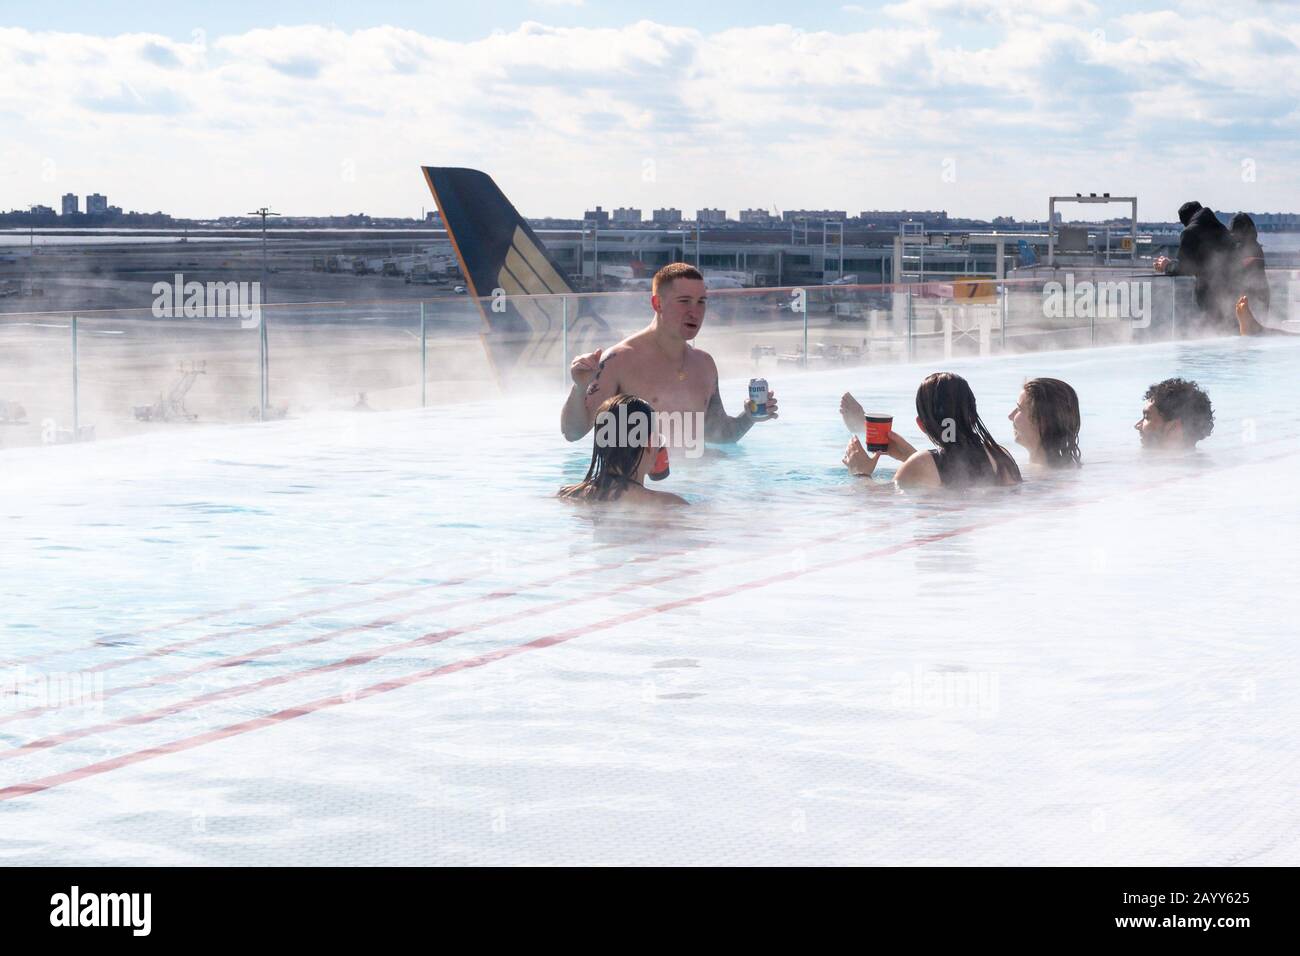 Come ospiti della struttura potrete usufruire della piscina a sfioro sul tetto del TWA Hotel all'aeroporto John F. Kennedy di New York, Stati Uniti Foto Stock